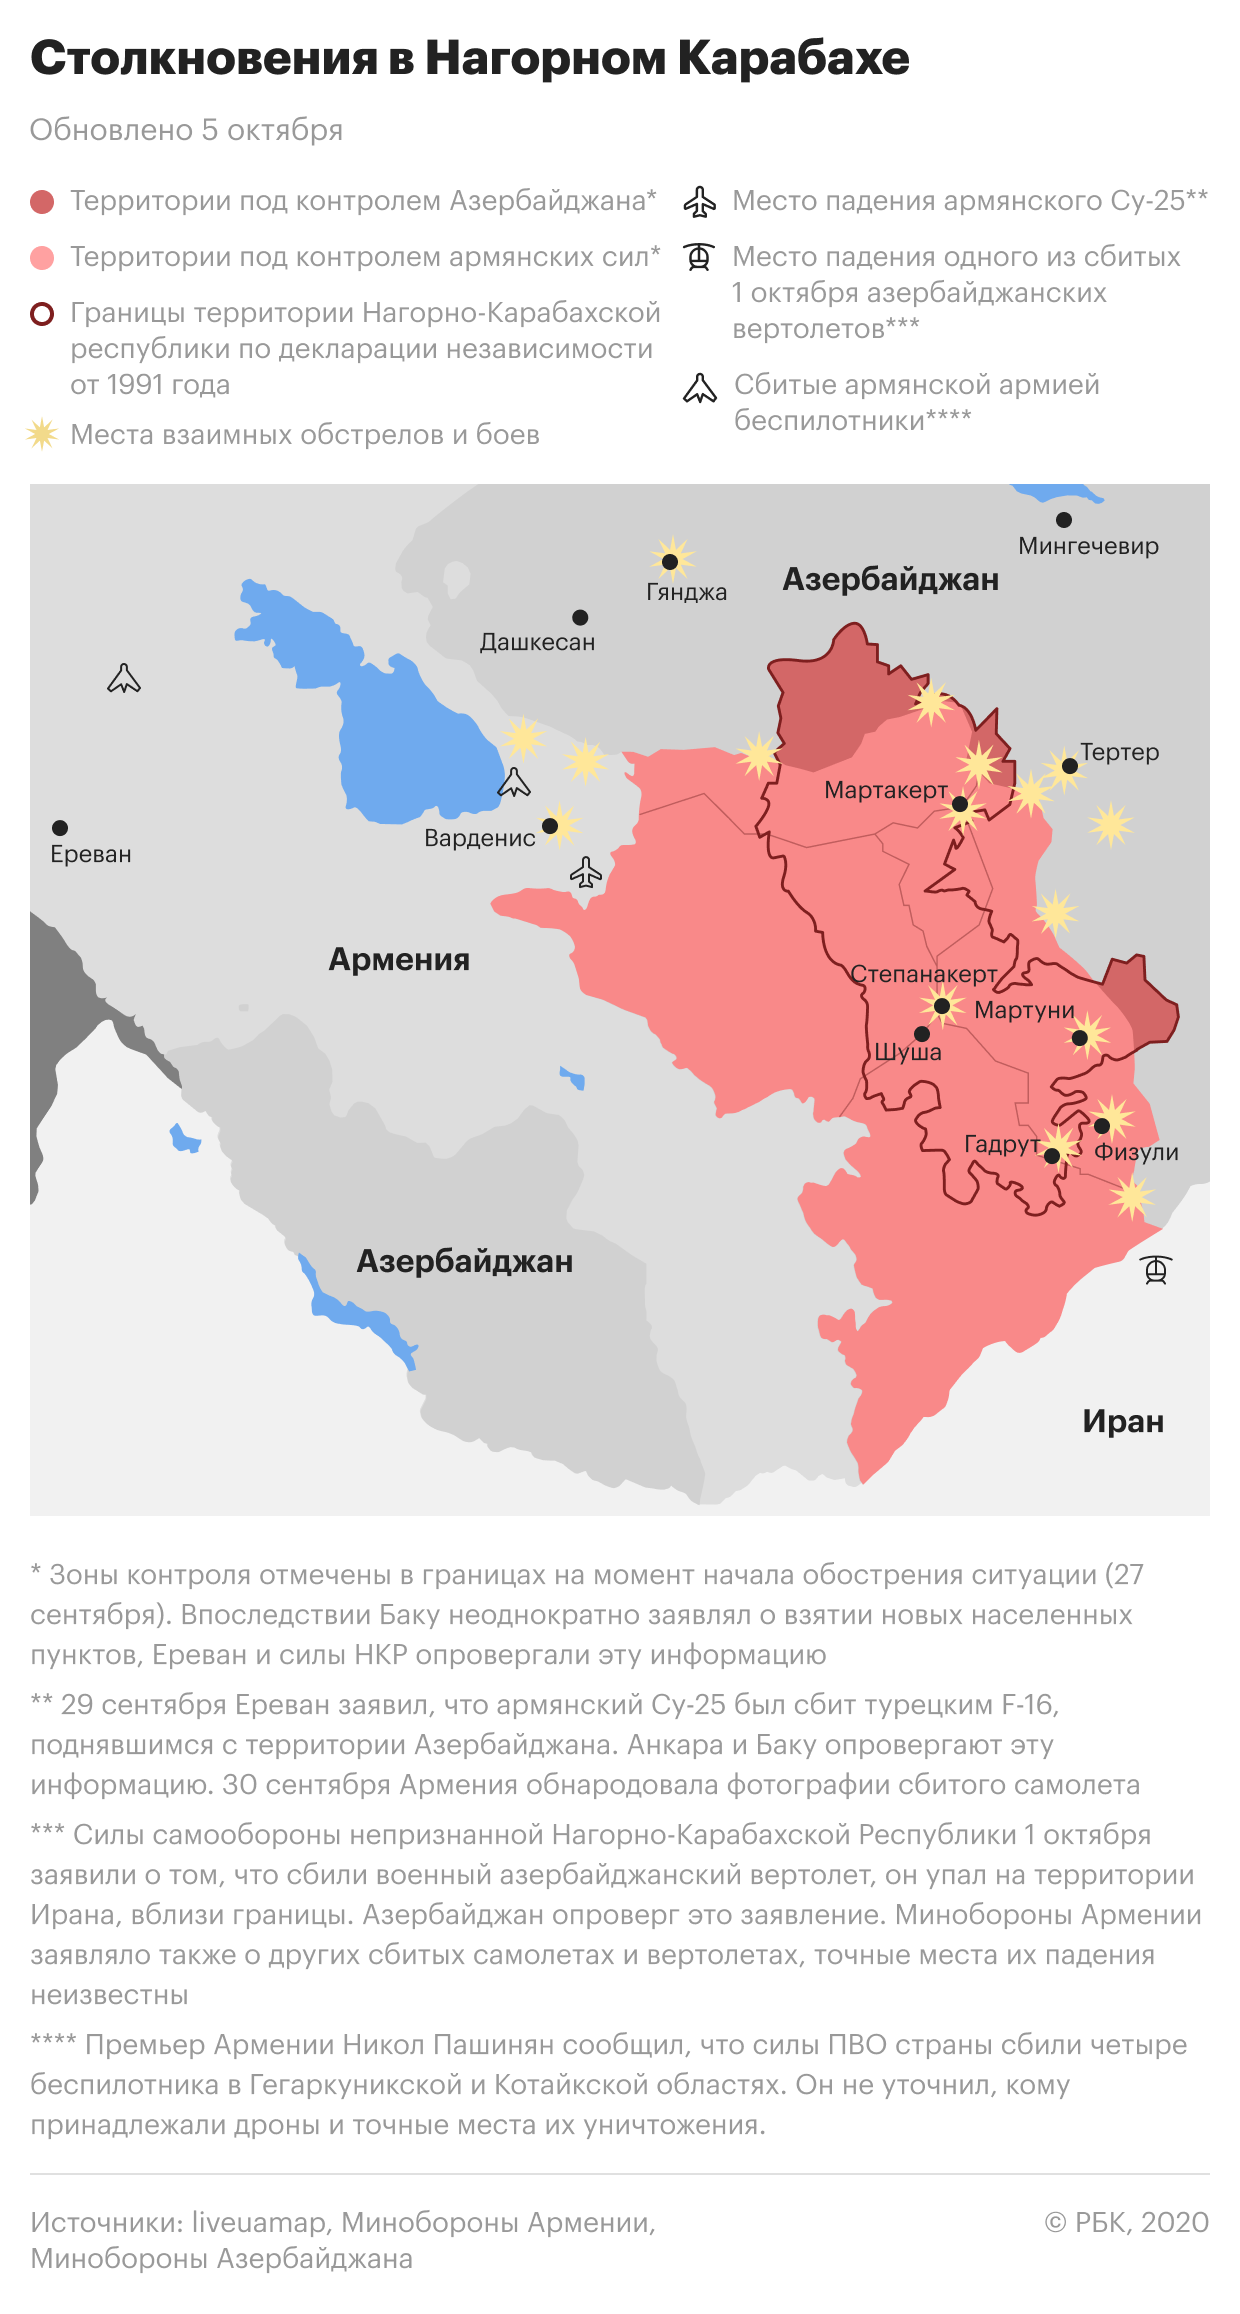 Ситуация в Нагорном Карабахе, на 6 октября: Армения и Азербайджан продолжают обвинять друг друга в обстрелах городов